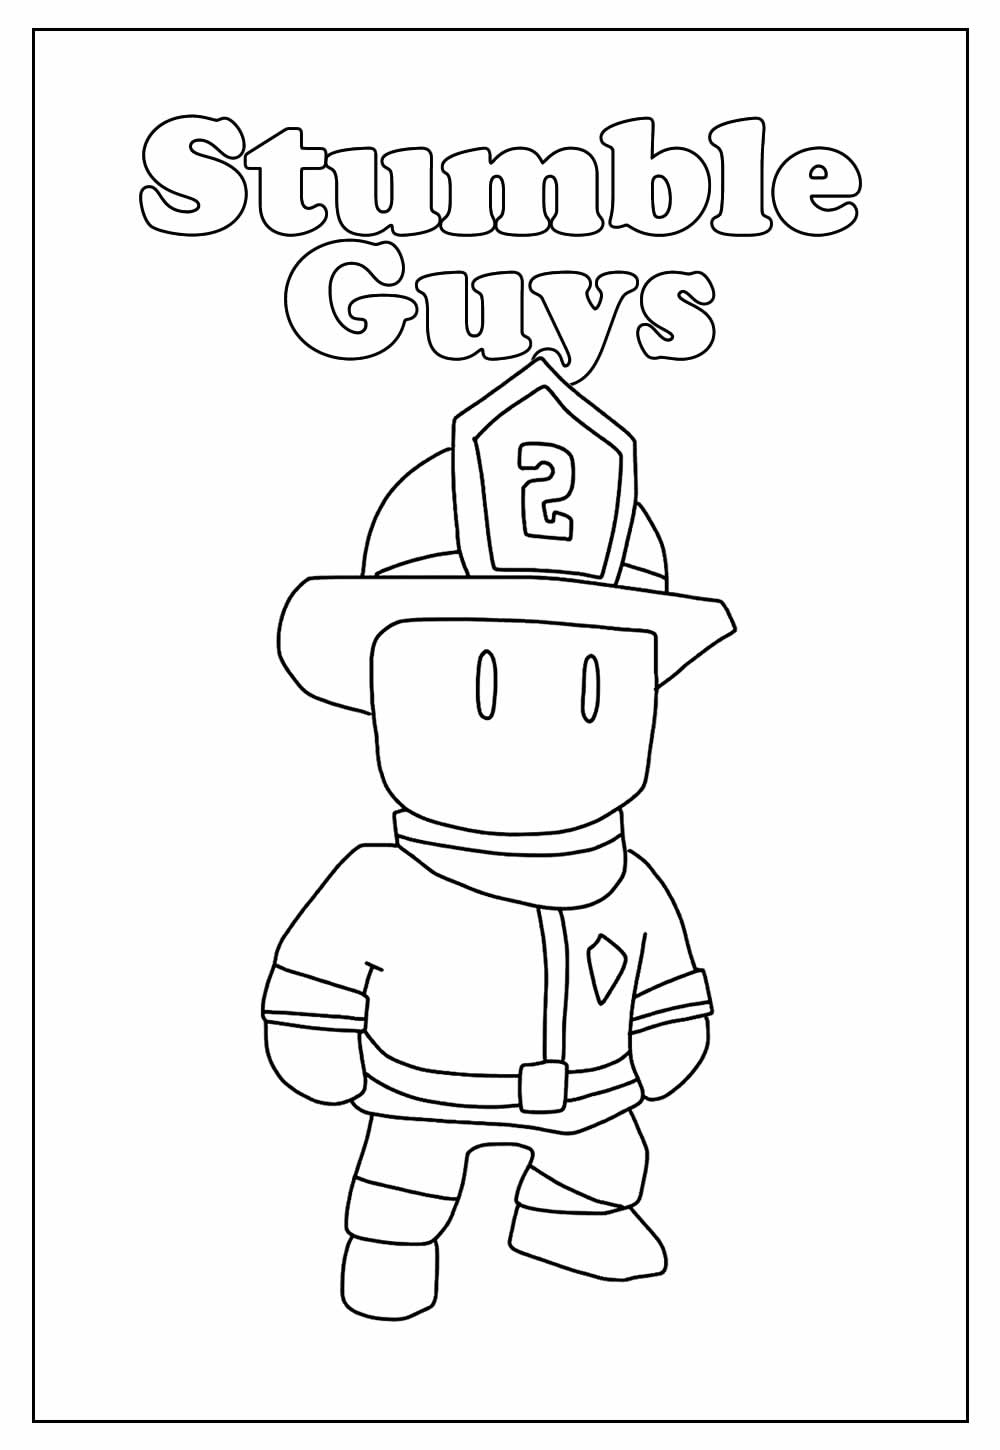 Desenho Educativo de Stumble Guys para colorir